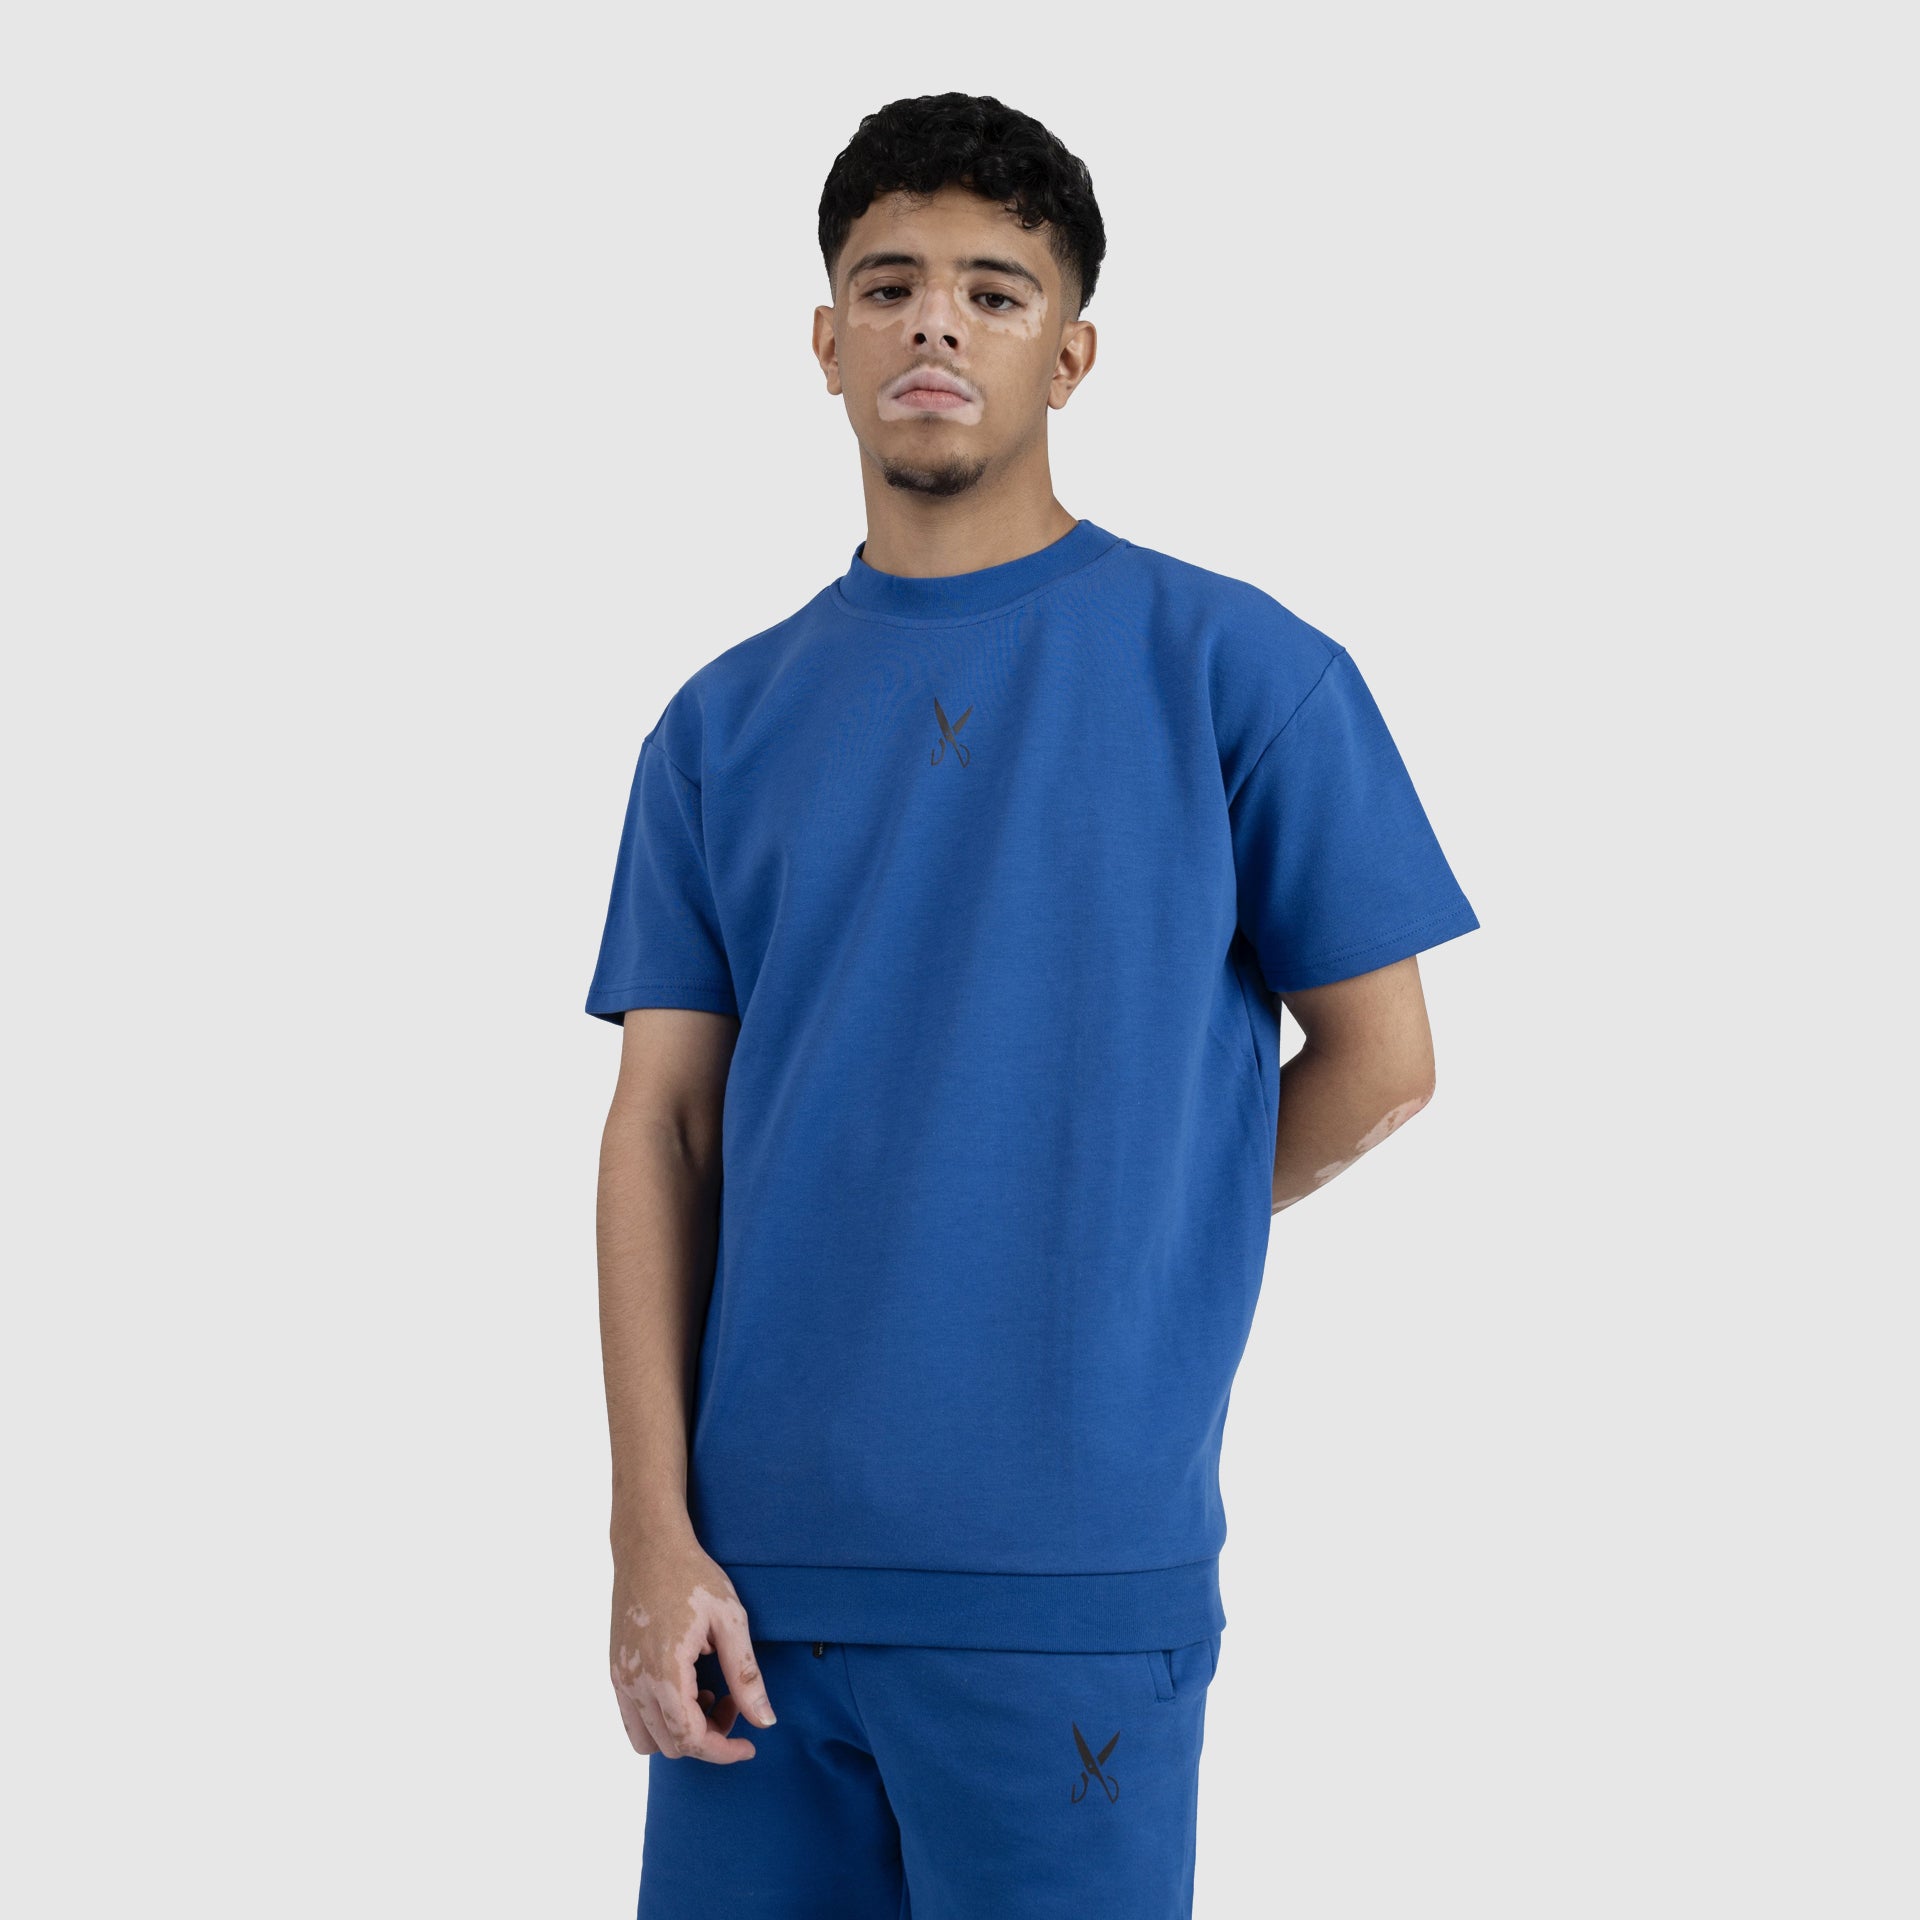 Blue Men T-shirt From Weaver Design